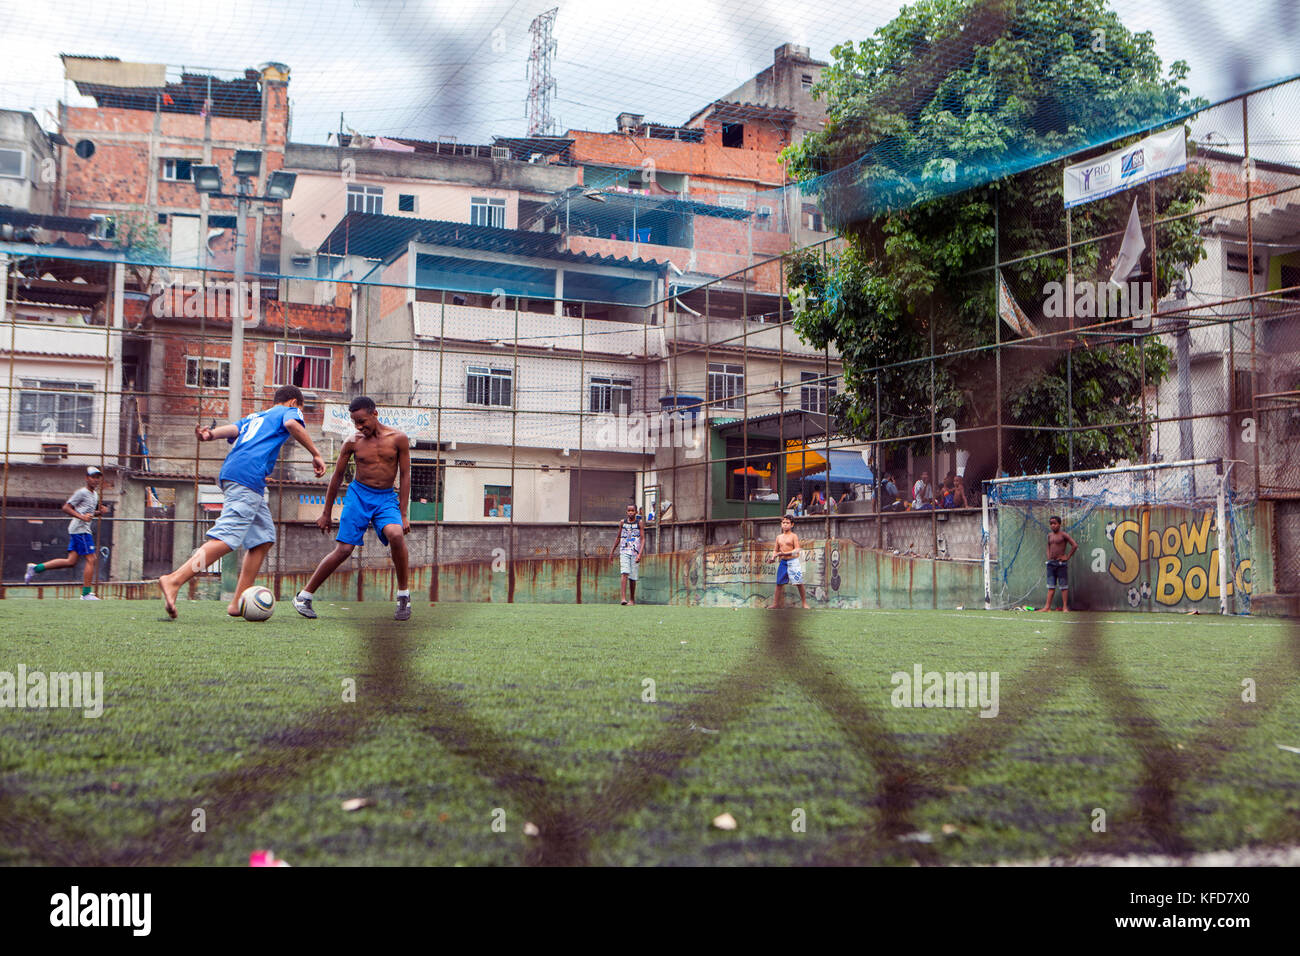 BRAZIL, Rio de Janiero, soccer game inside the Complexo do Alemao Favela Stock Photo